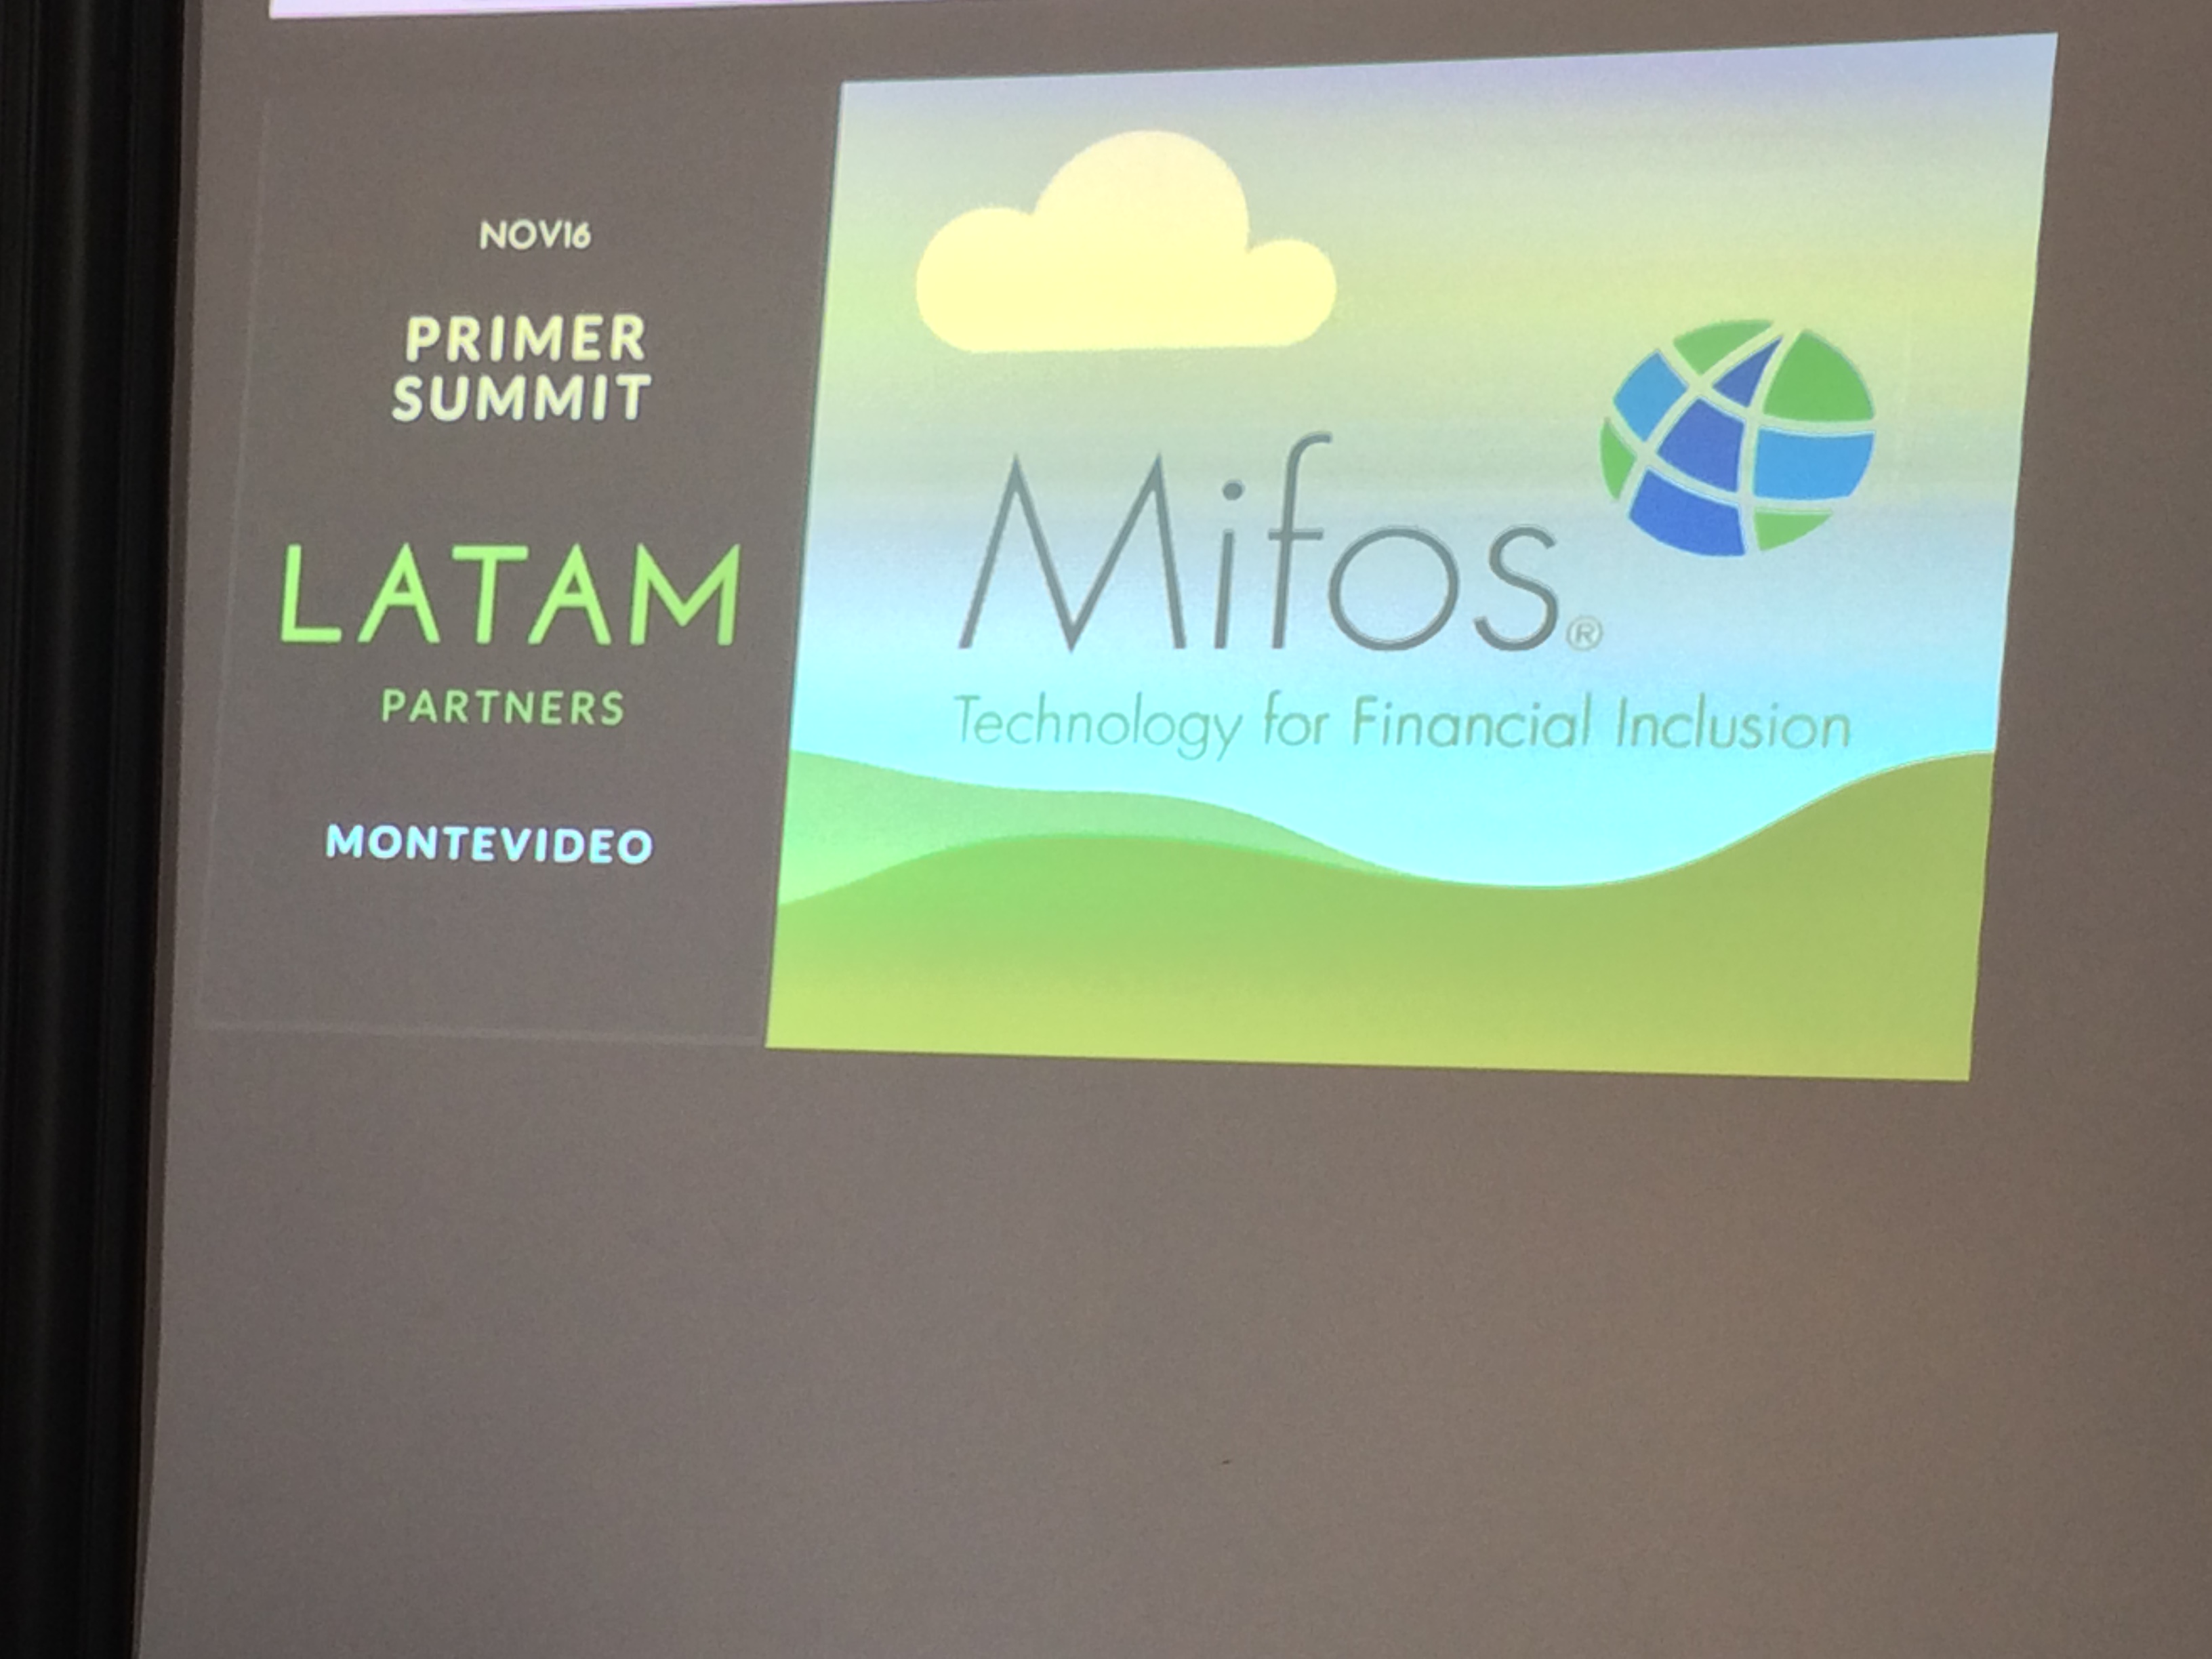 Opening slide for Latam Partner Summit